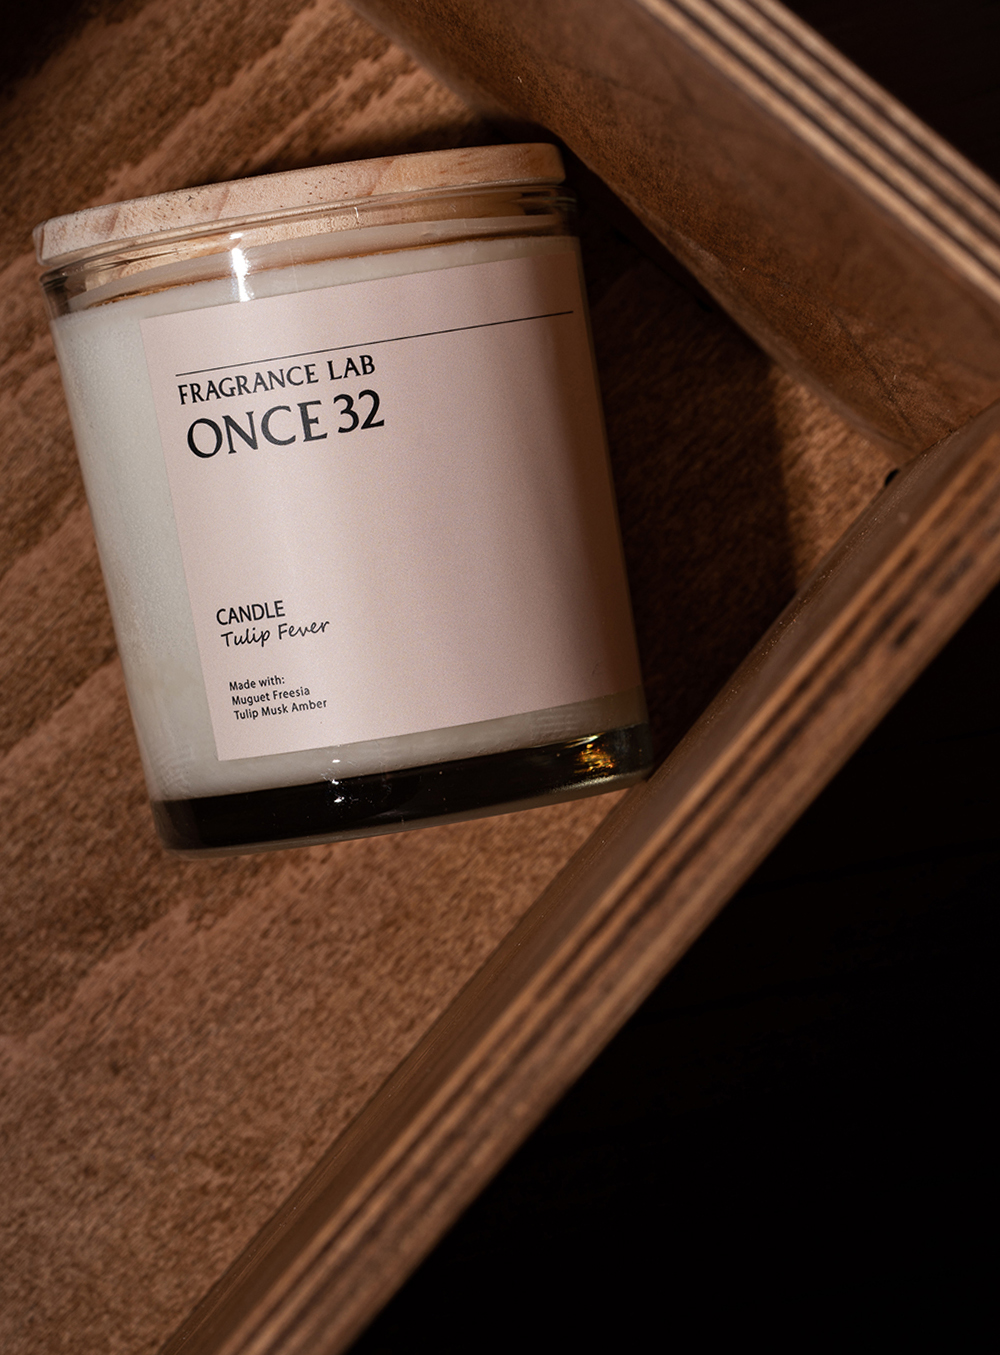 원스32 - ONCE32 Candle